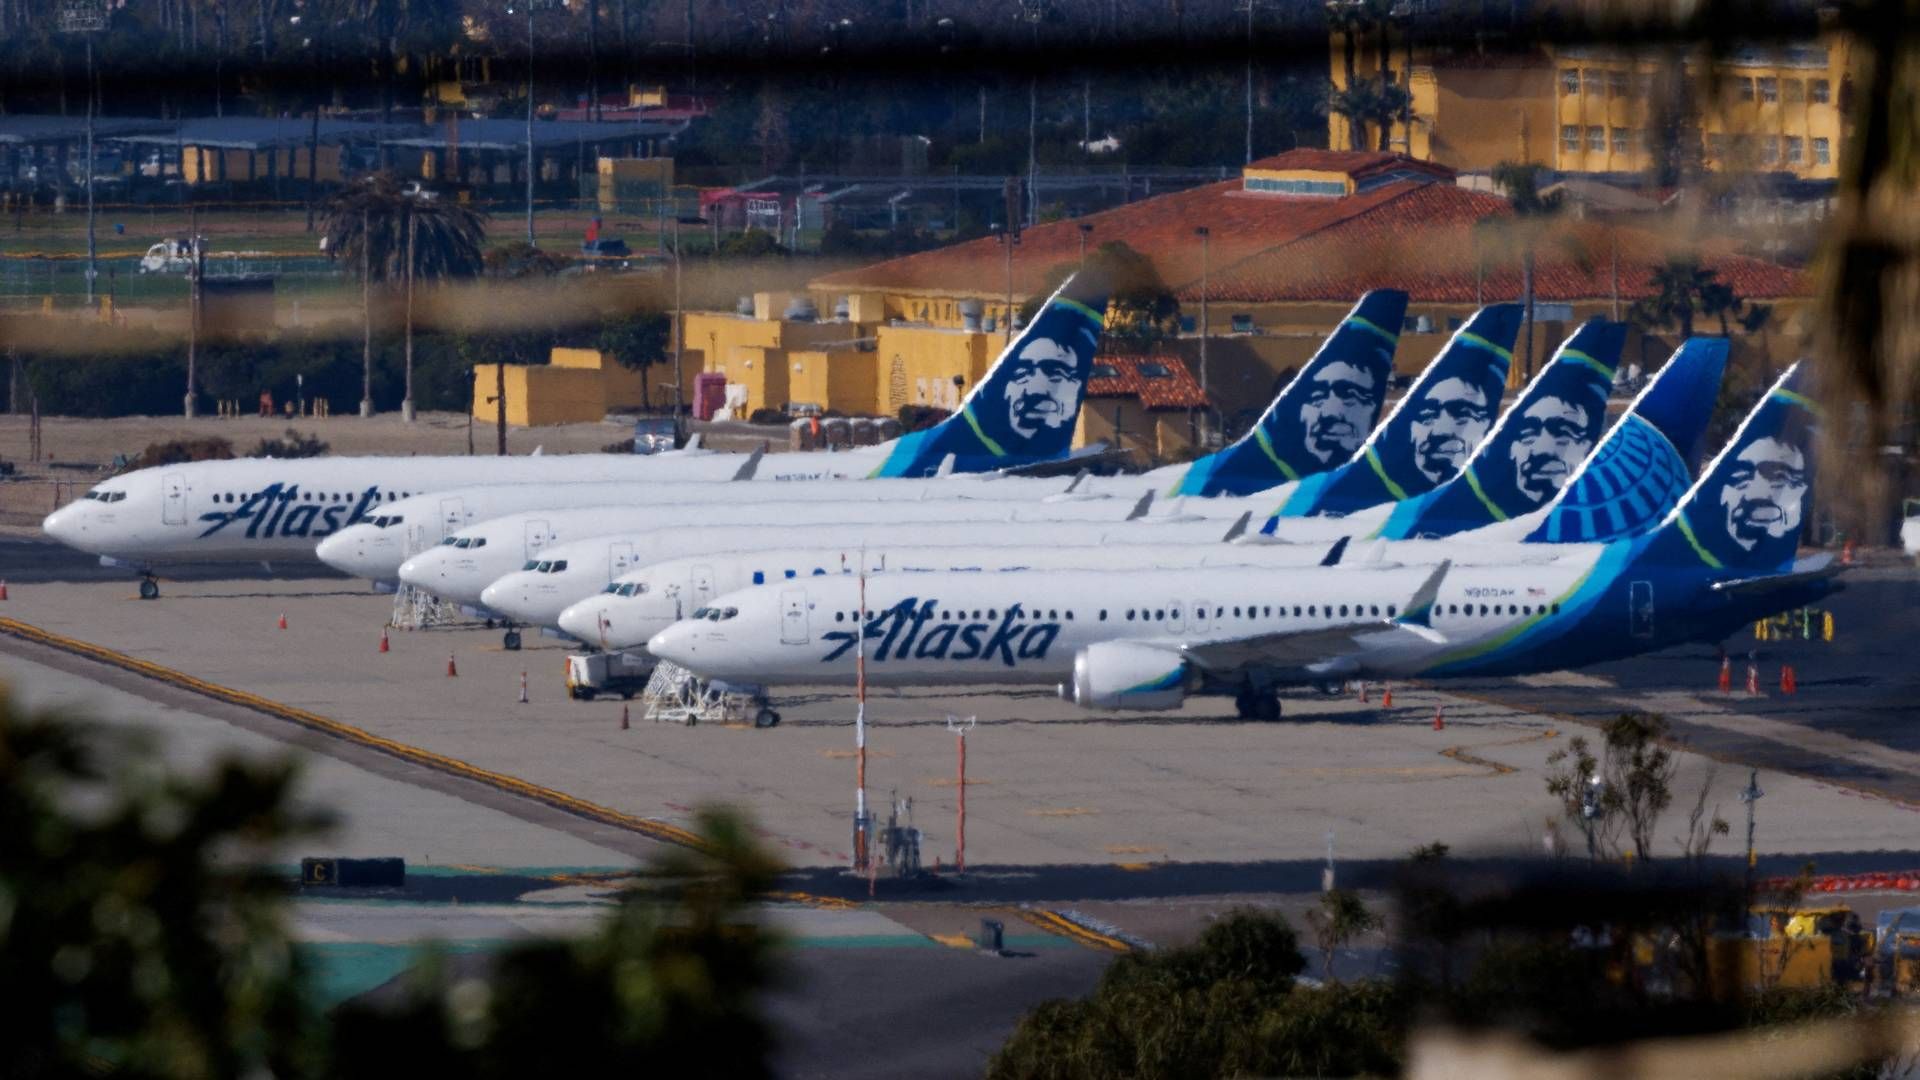 Det var et af Alaska Airlines' fly, der viste sig at have en alvorlig fejl under en flyvning. Siden uheldet har i alt 171 Boeing 737 Max 9-fly haft forbud mod at flyve i amerikansk luftrum.